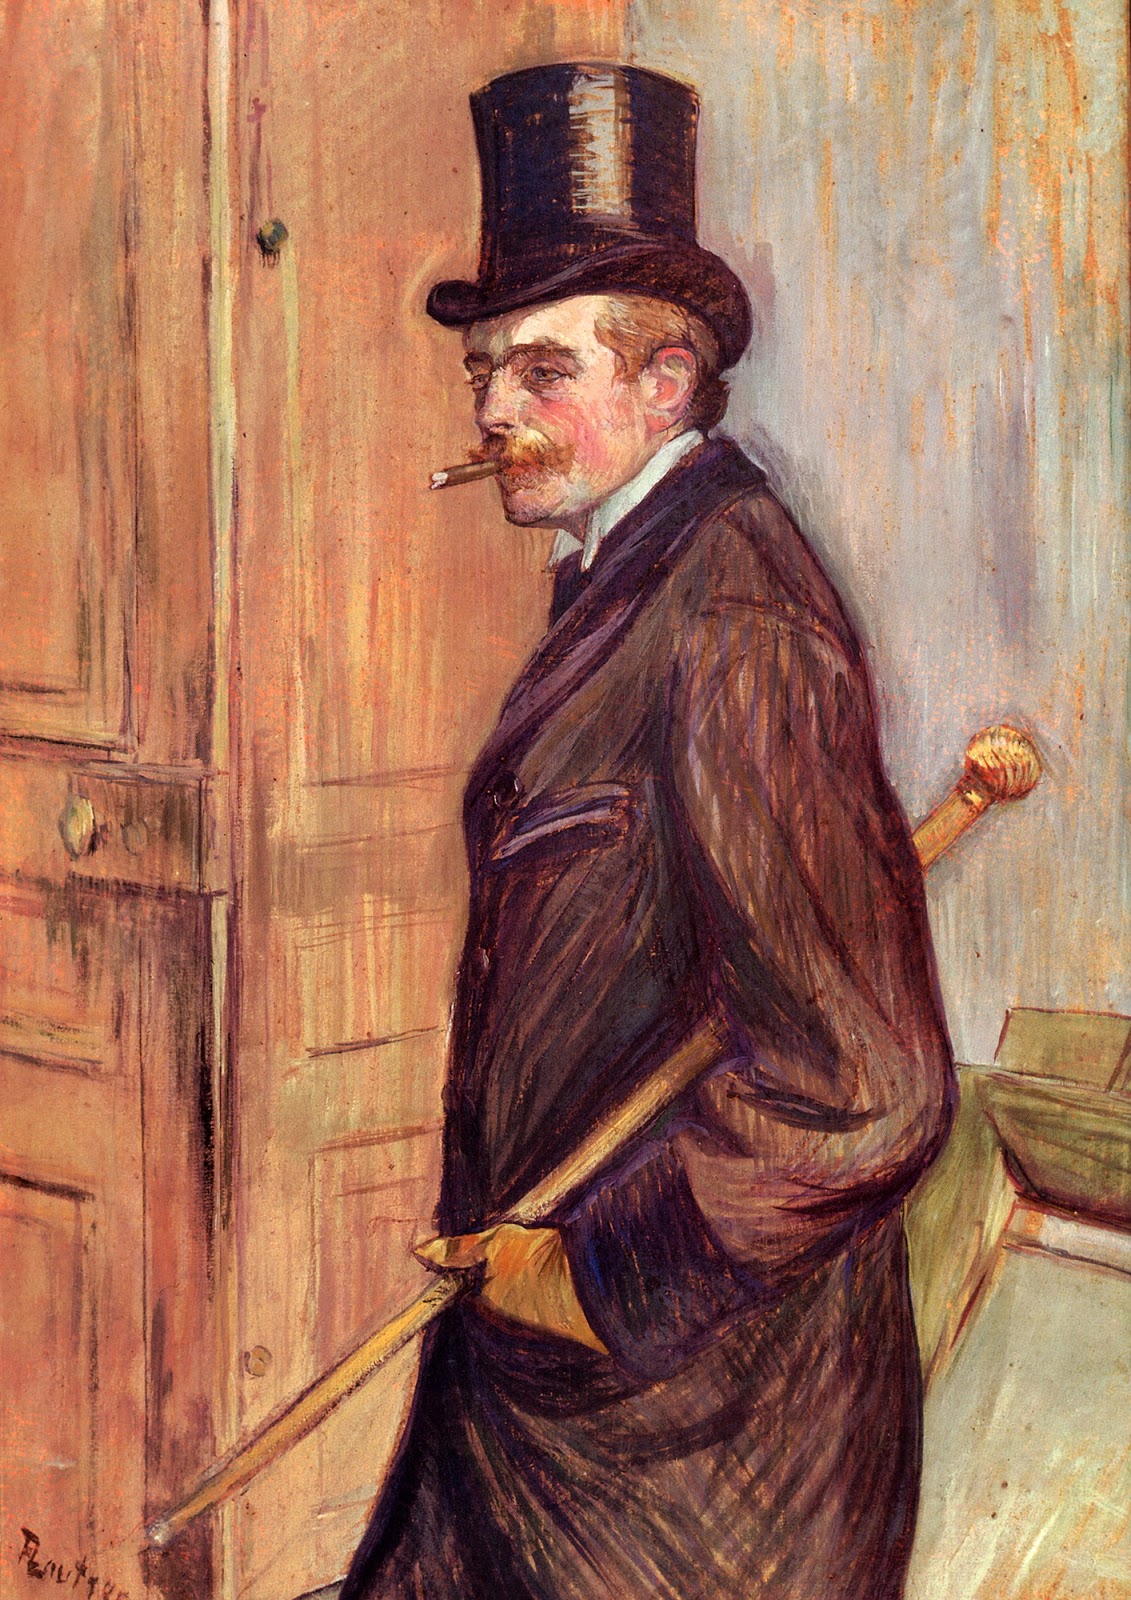 Henri+de+Toulouse+Lautrec-1864-1901 (92).jpg